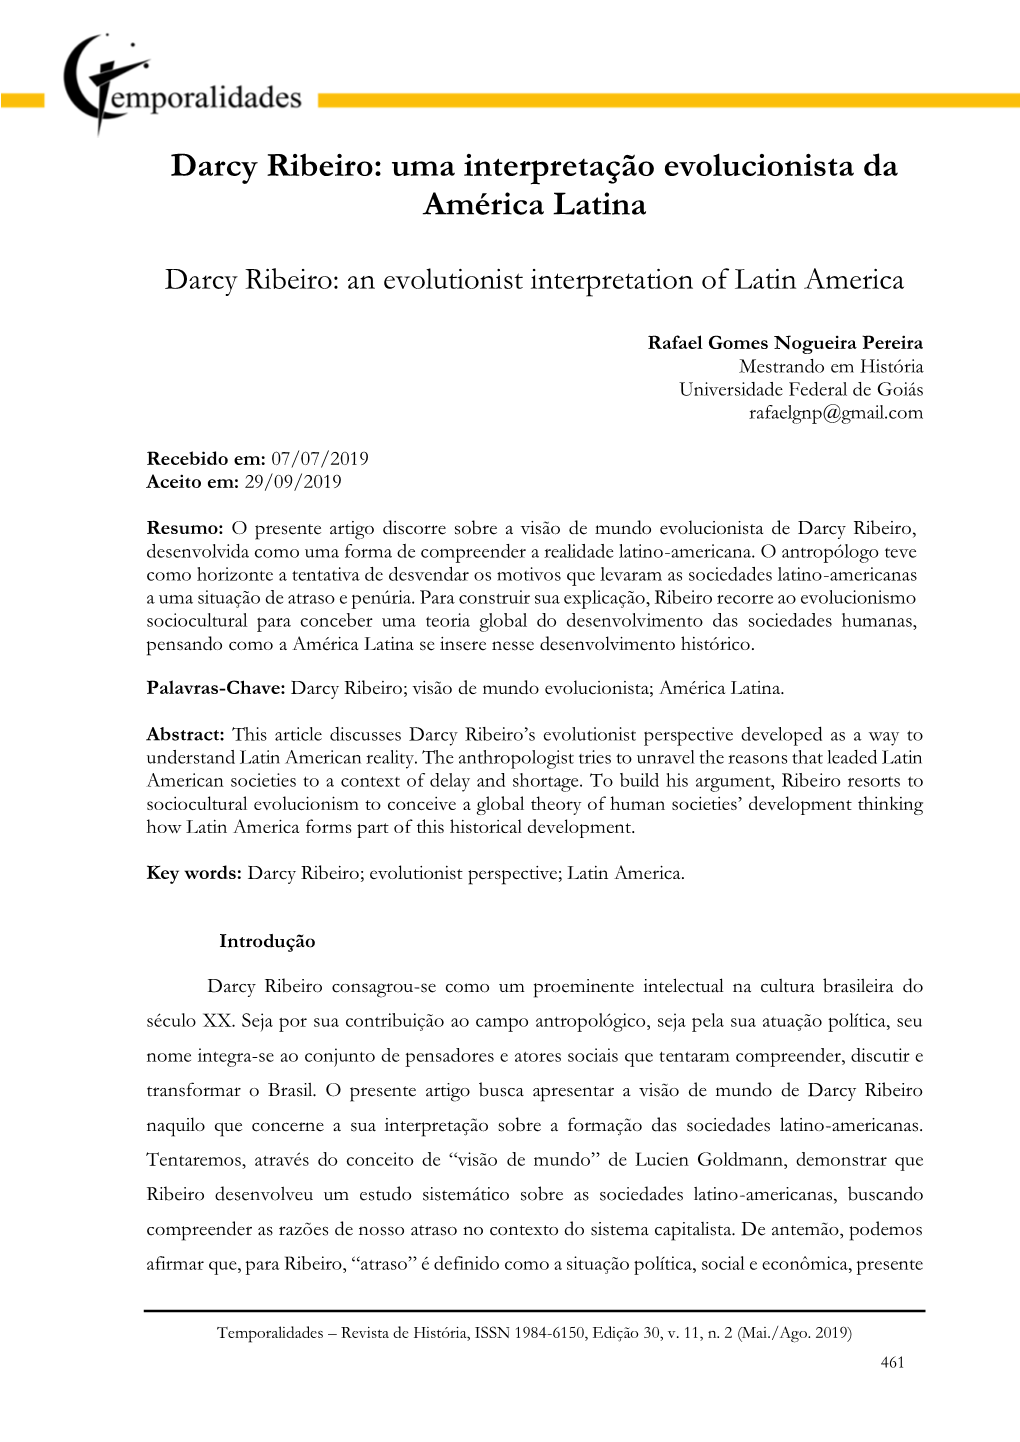 Darcy Ribeiro: Uma Interpretação Evolucionista Da América Latina